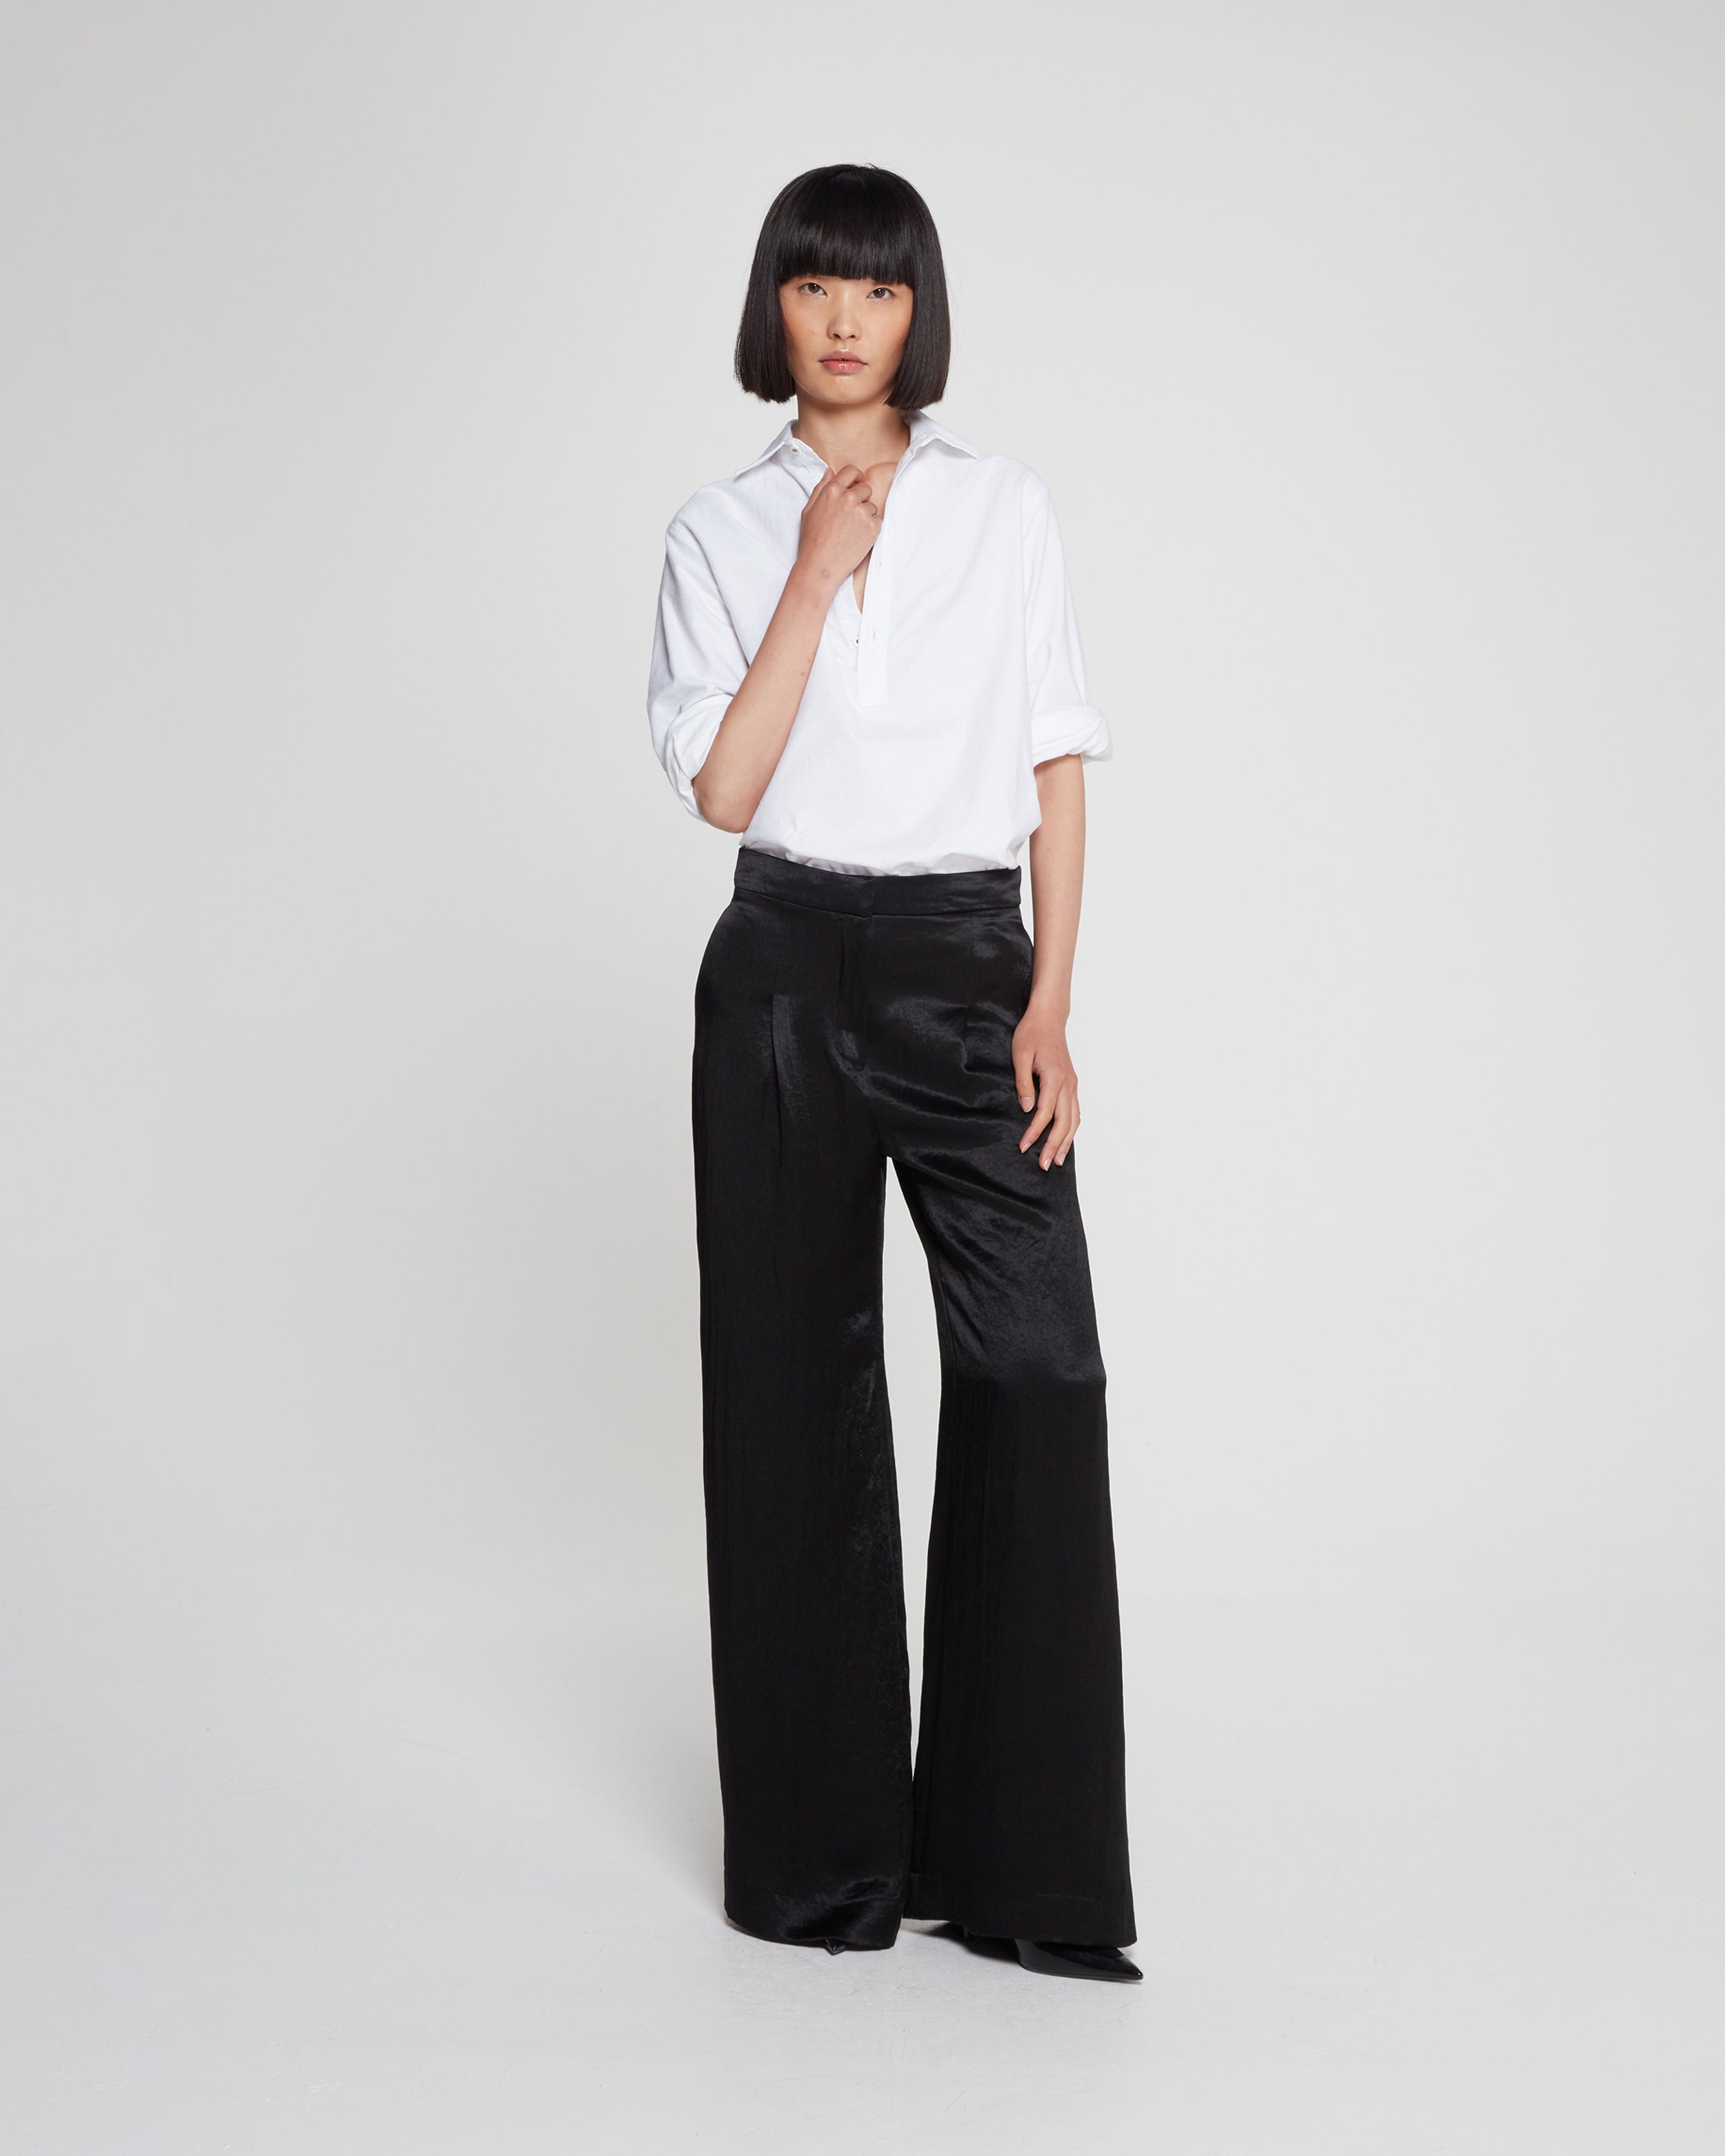 Buy Women Black Solid Formal Slim Fit Trousers Online - 258302 | Van Heusen